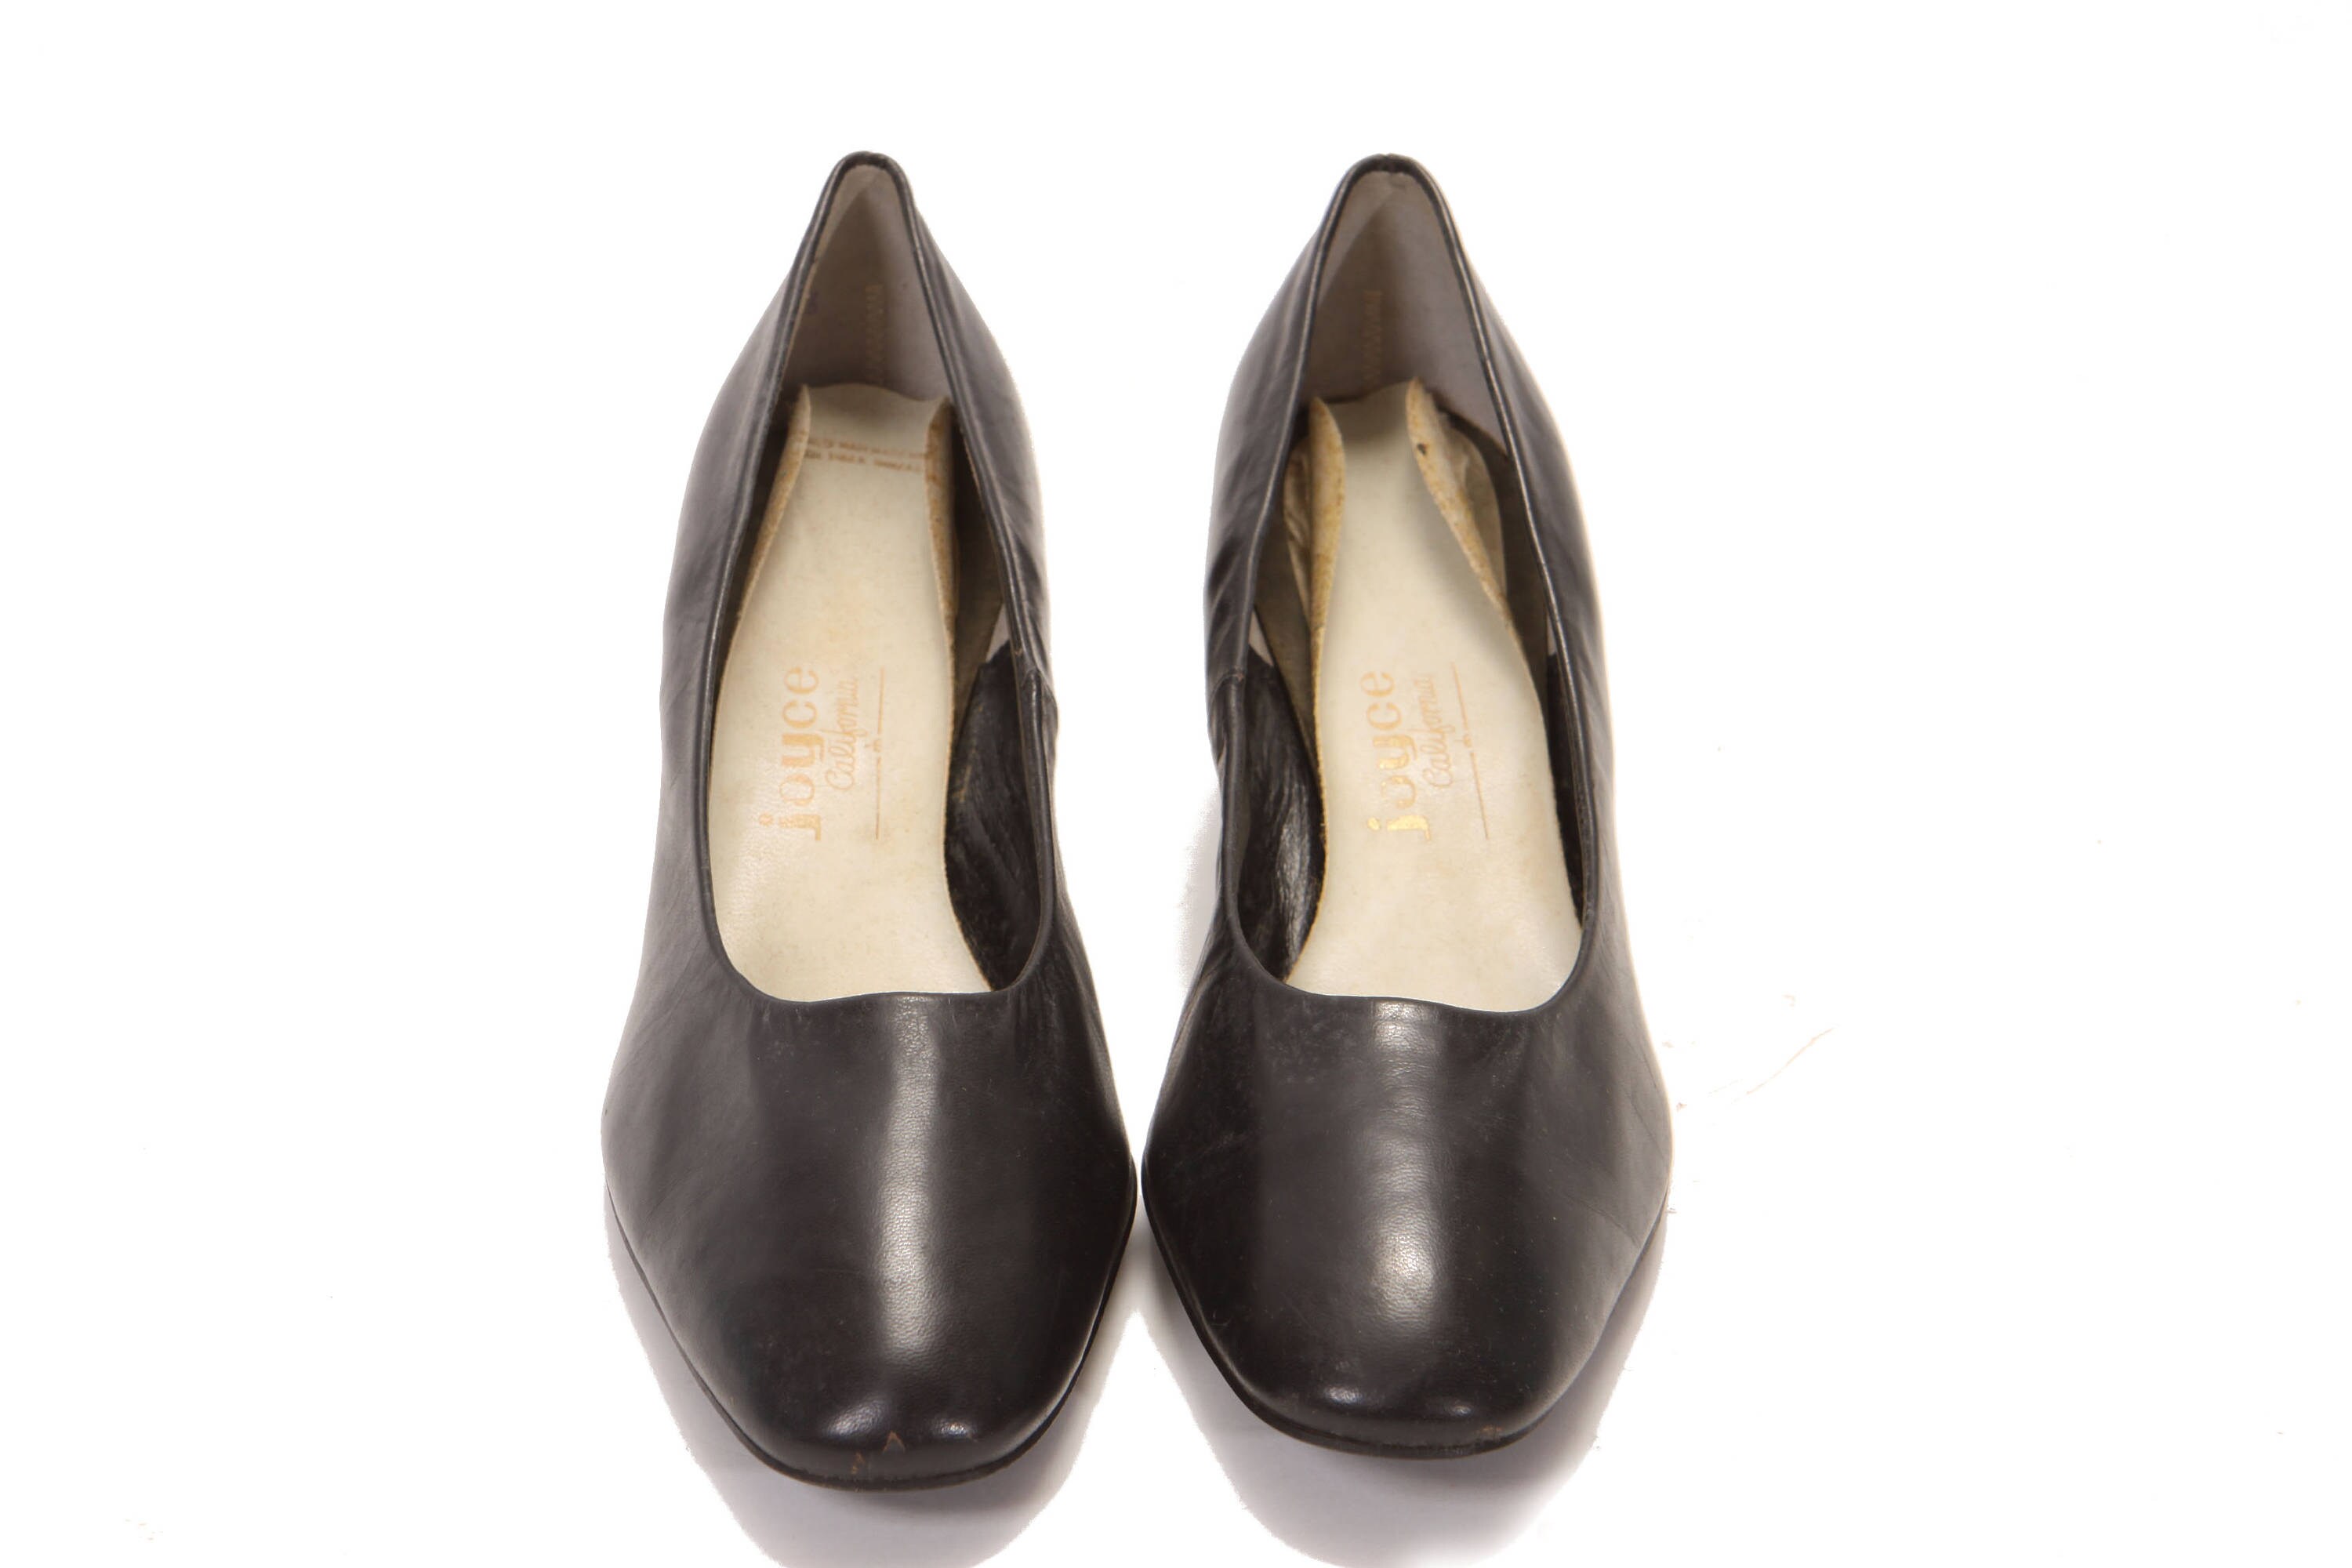 Deadstock 1960s Black Leather High Heel Pumps by Joyce -Size 10B